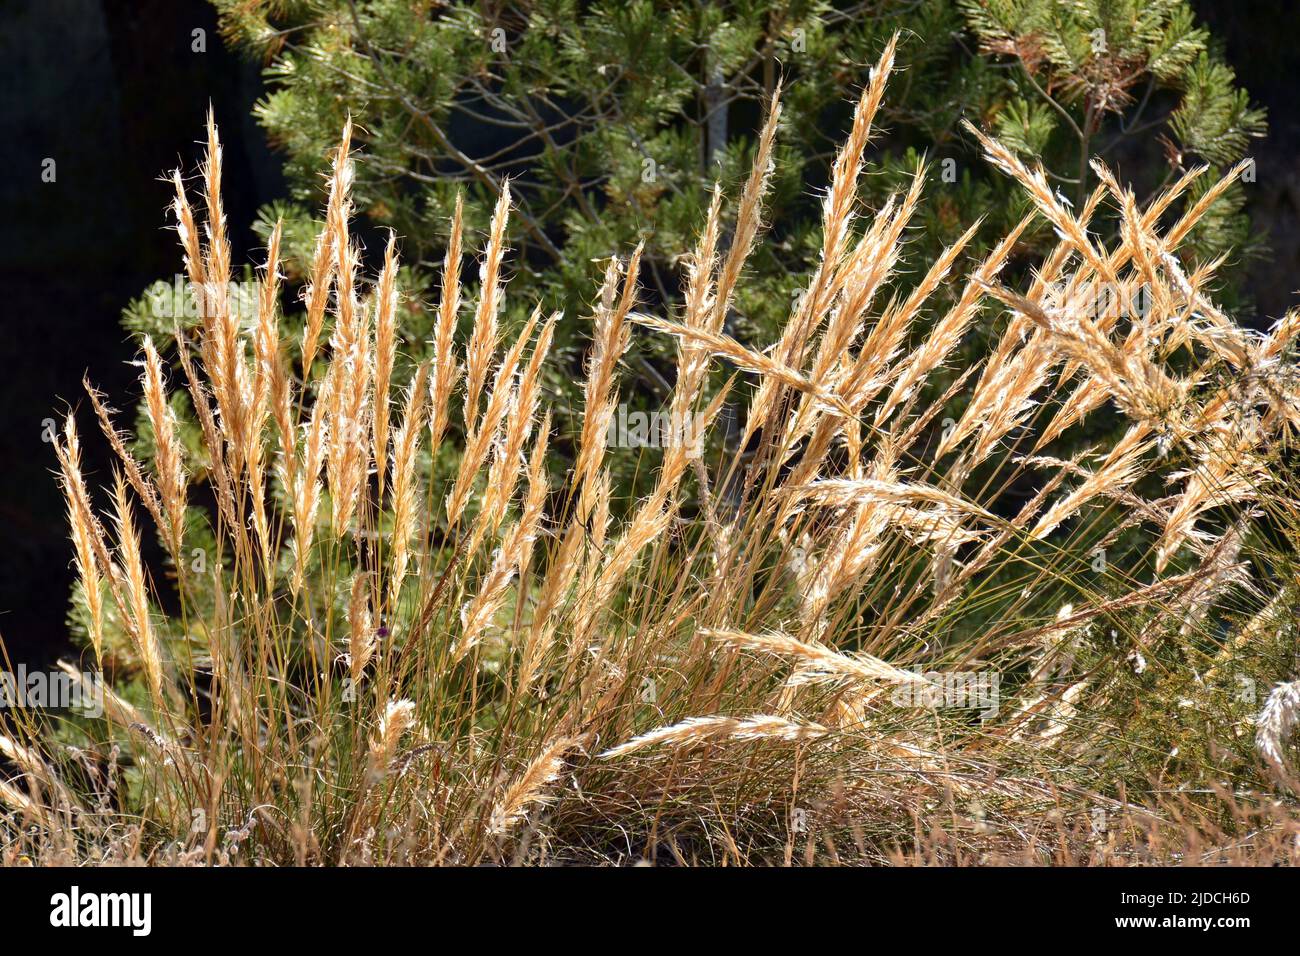 Planta de esparto, macrocchloa tenacissima, a princippios de verano Foto Stock